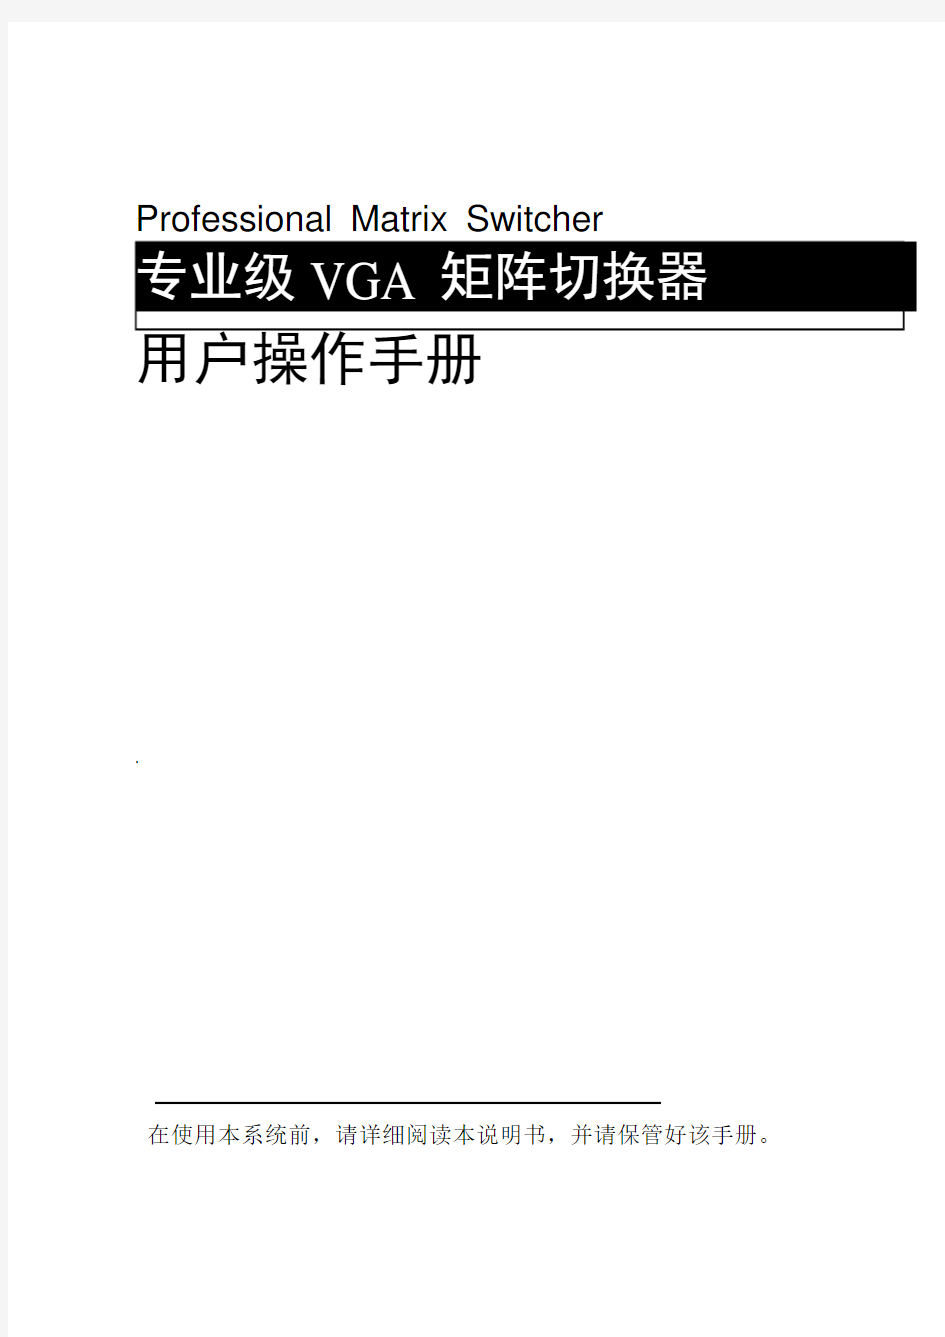 VGA矩阵操作说明书V1.0